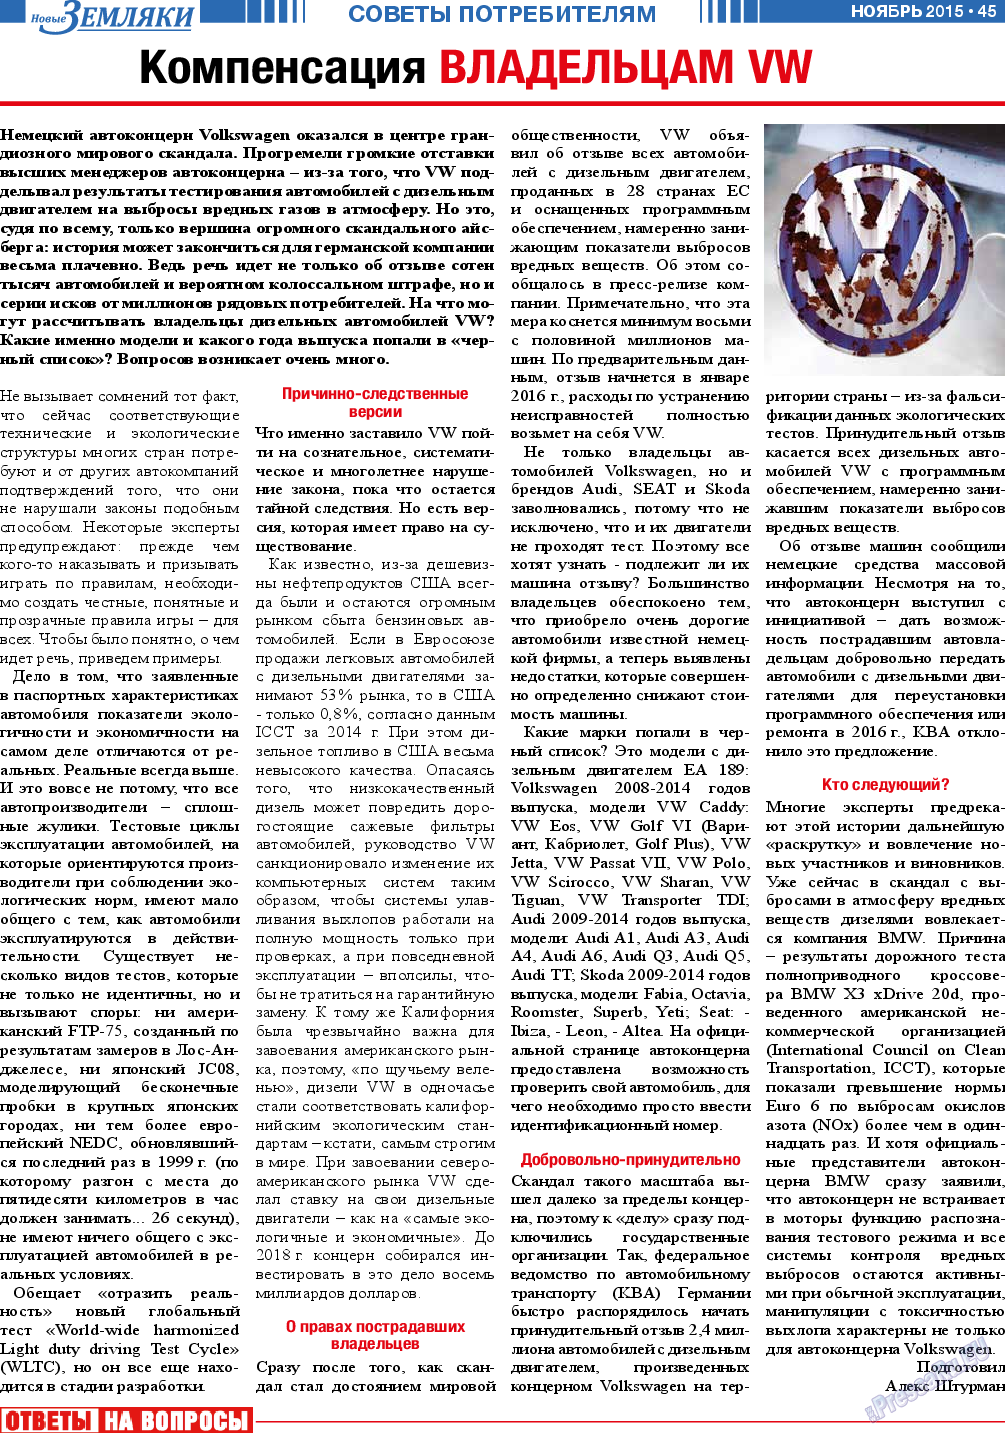 Новые Земляки, газета. 2015 №11 стр.45